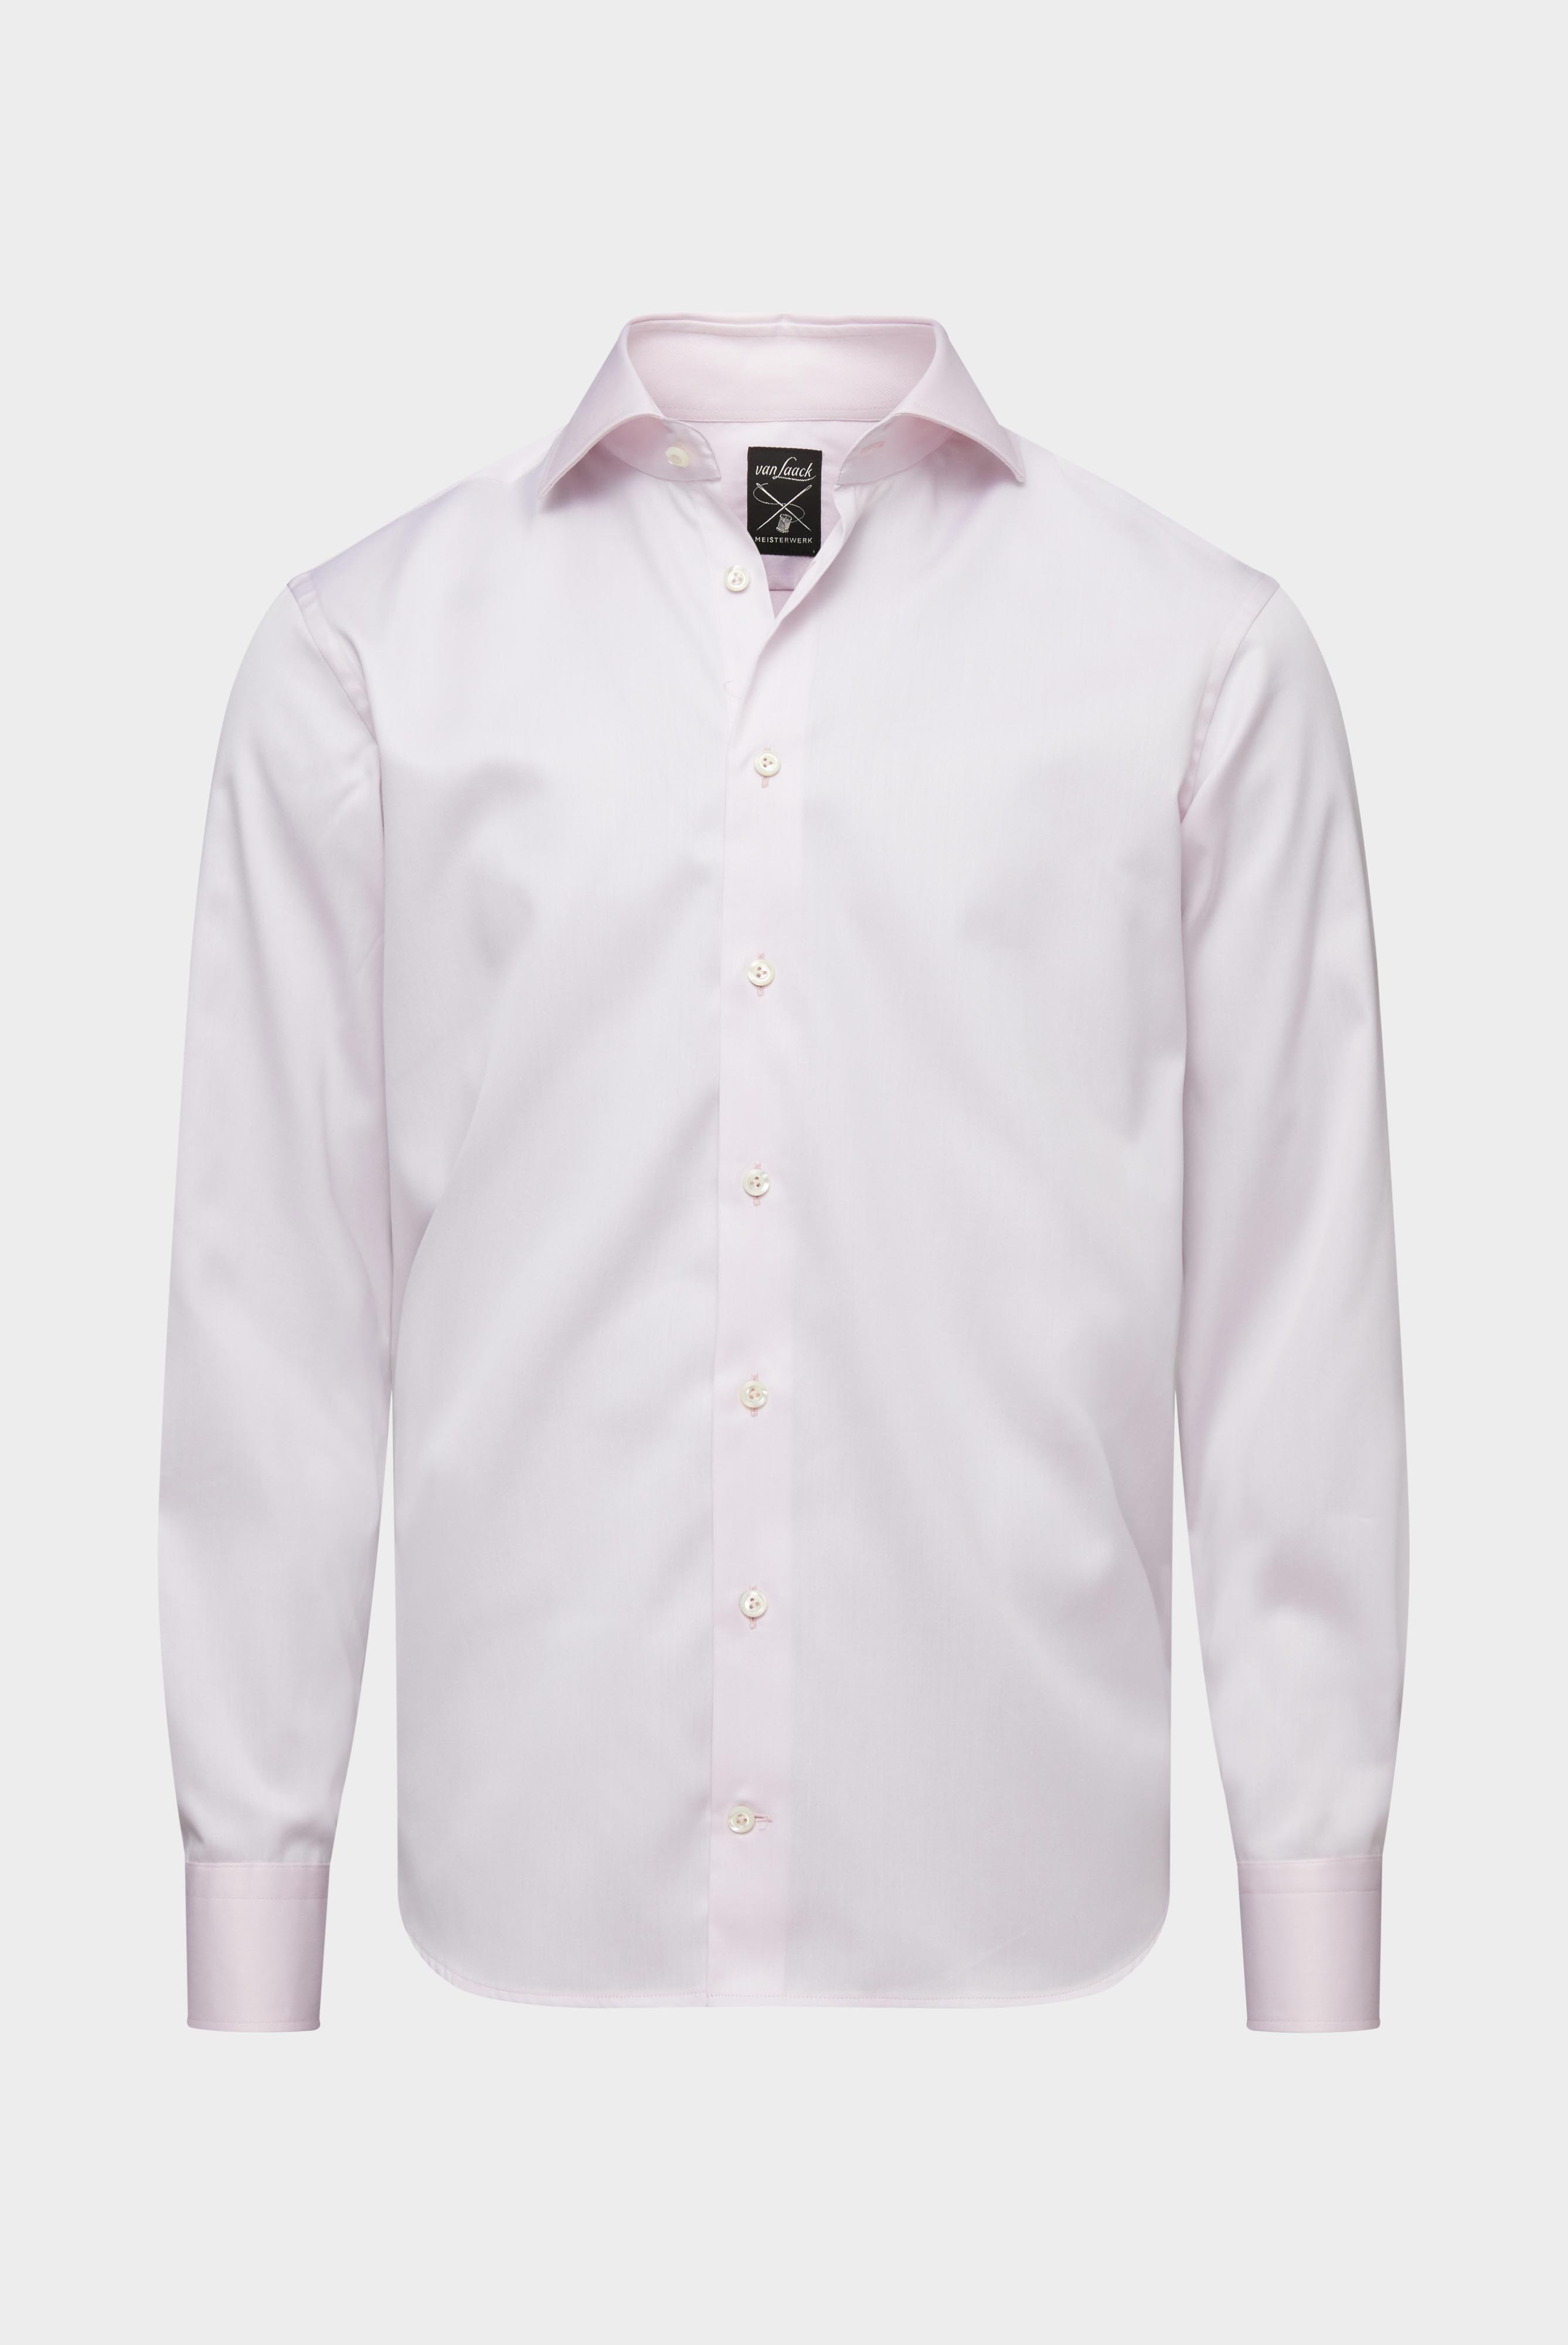 Bügelleichte Hemden+Bügelfreies Twill Hemd Tailor Fit+20.2020.BQ.132241.510.37